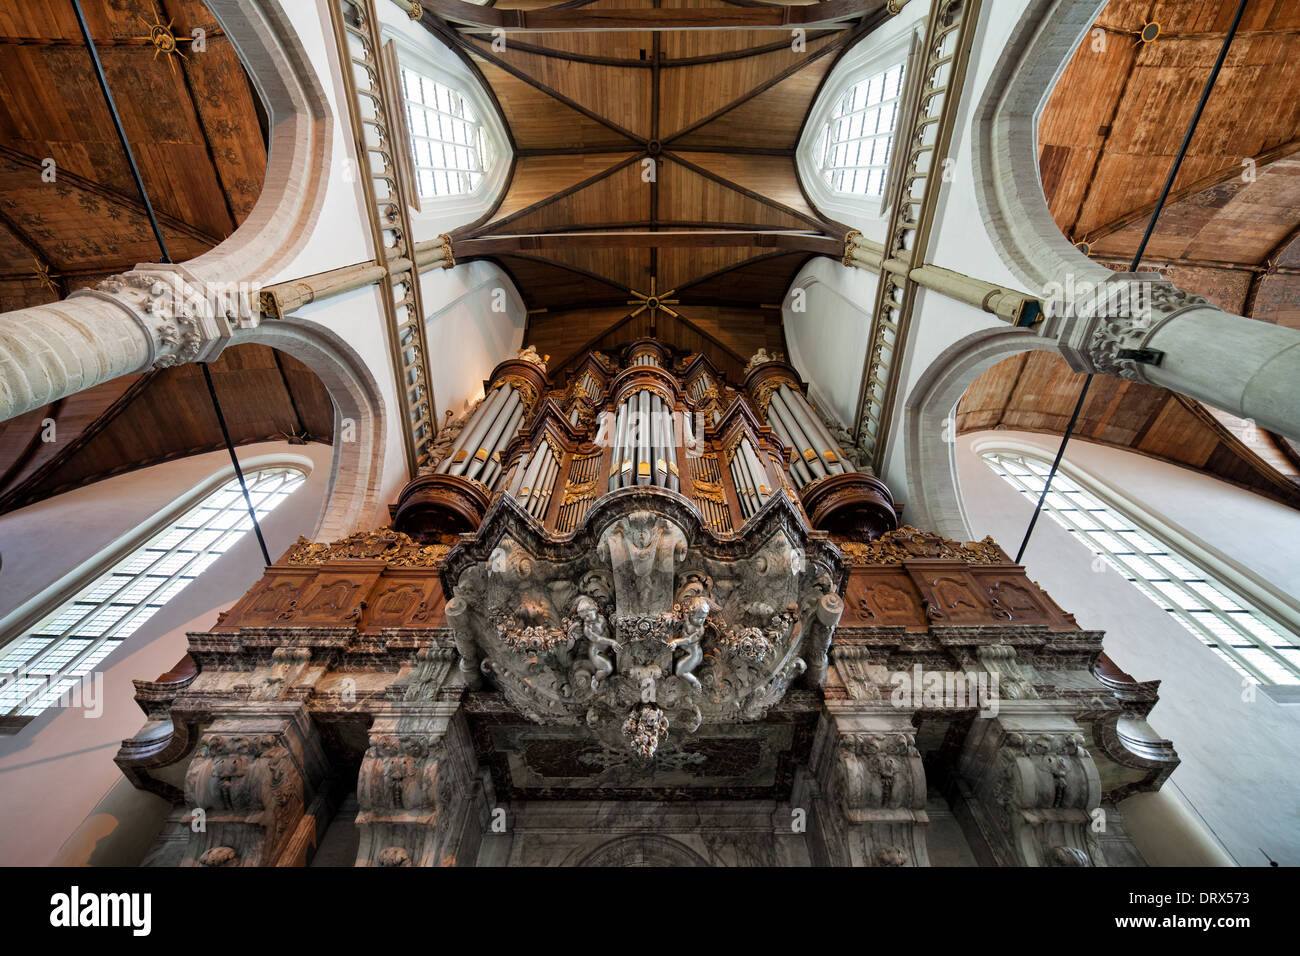 Grand orgue baroque dans la Oude Kerk (vieille église) construite en 1724-1726 par Christian Vater, Amsterdam, Hollande, Pays-Bas. Banque D'Images